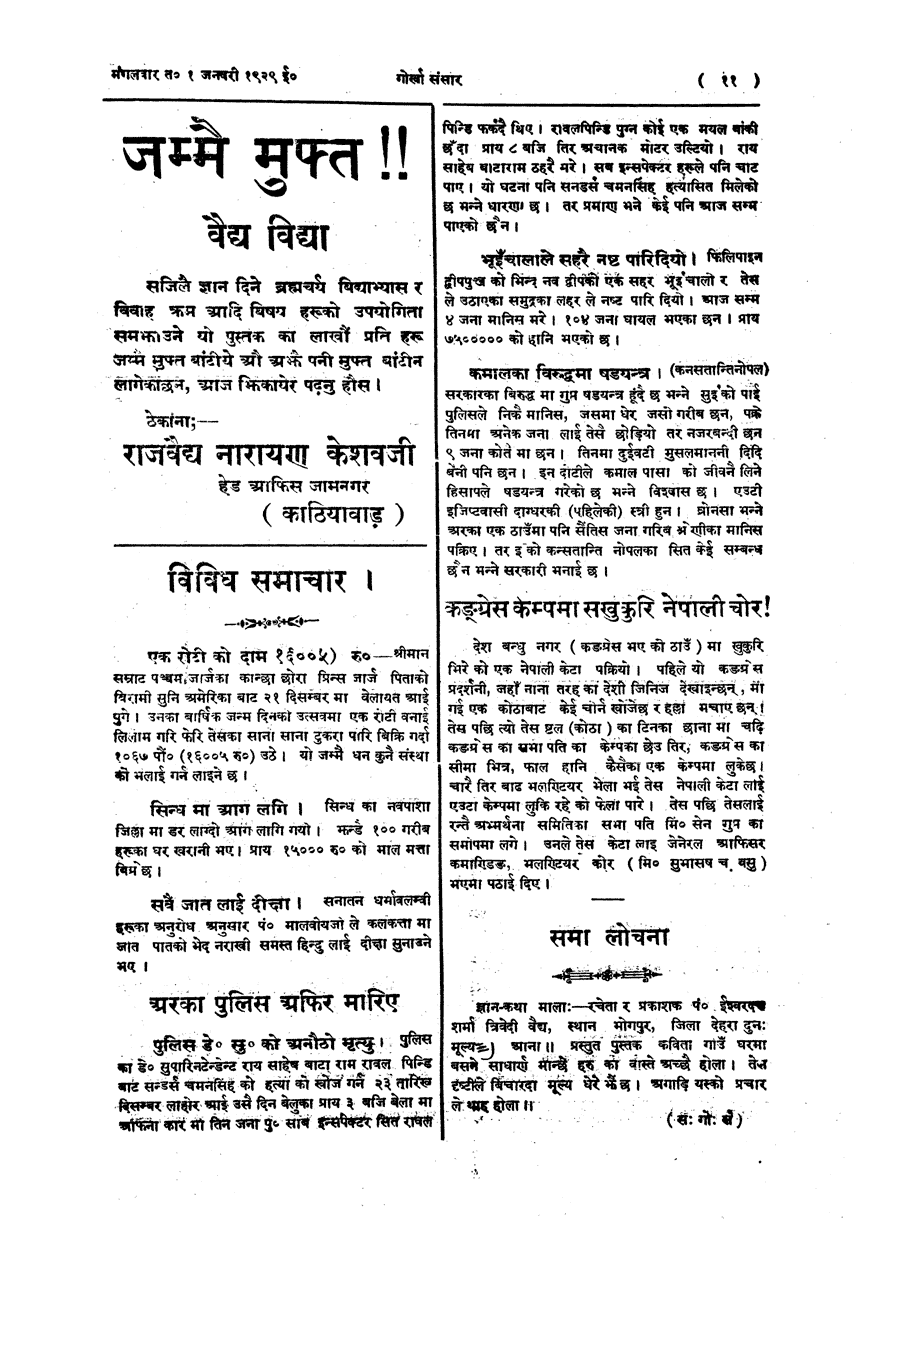 Gorkha Sansar, 1 Jan 1929, page 11